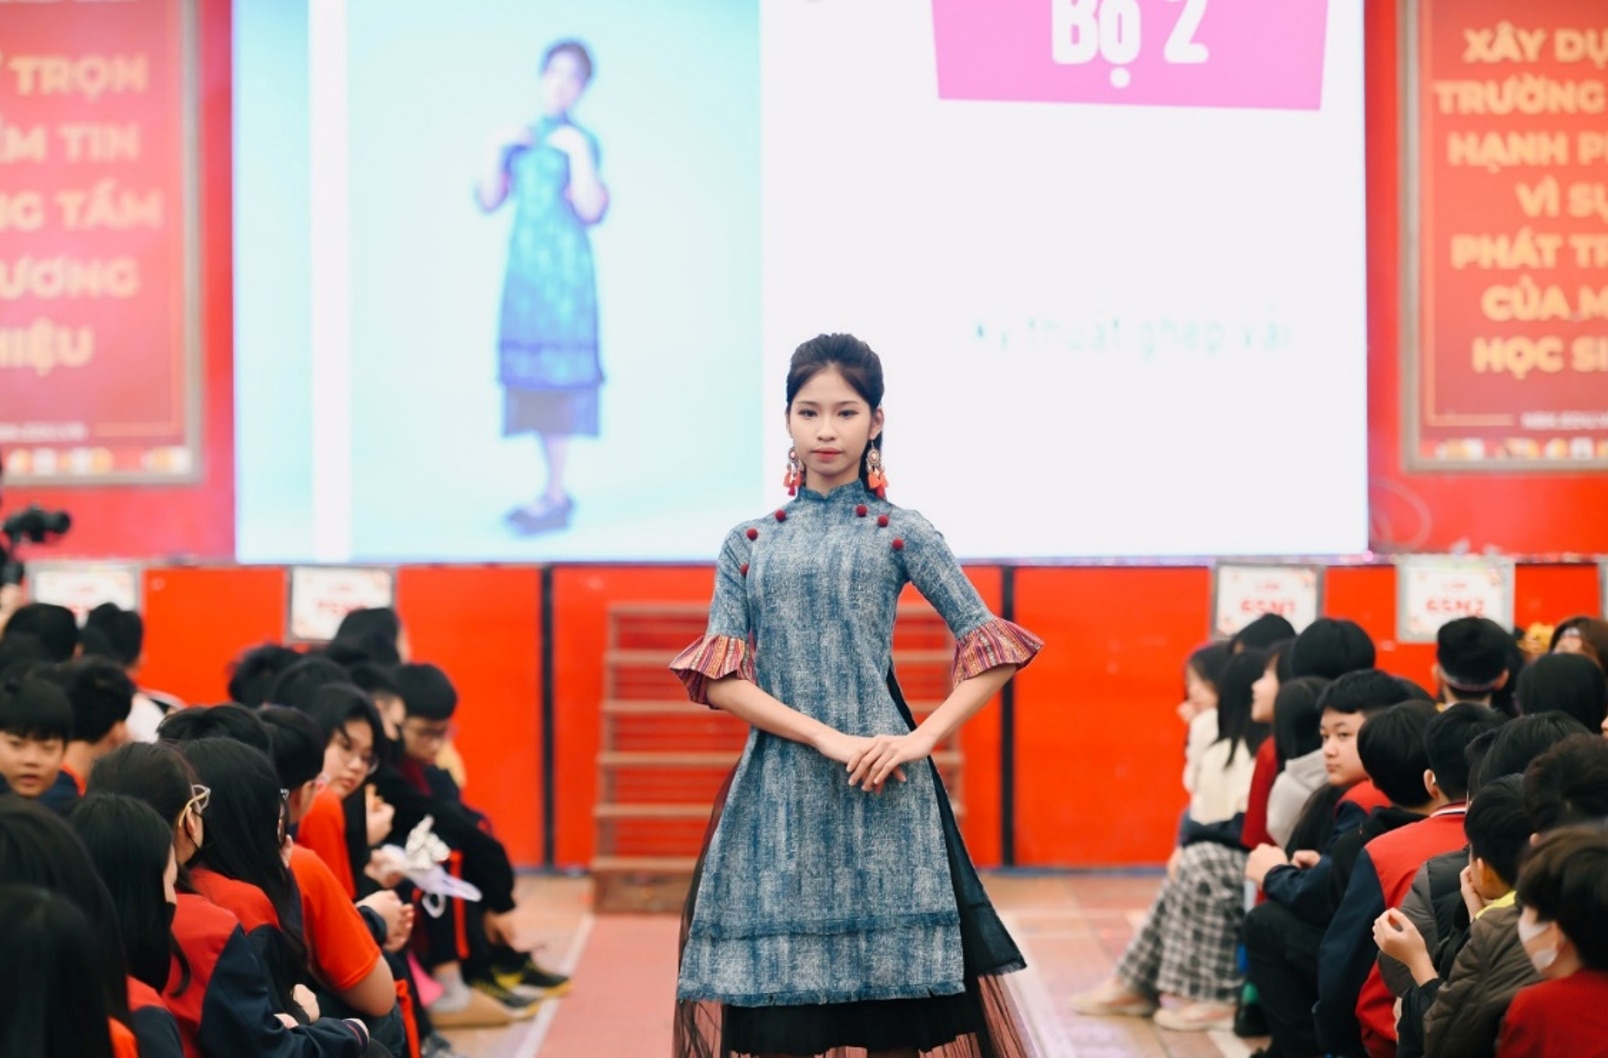 Các mẫu thiết kế trong bộ sưu tập "Gió bấc" được Dương Tuệ Mẫn lấy ý tưởng tái chế từ những bộ quần áo cũ, kết hợp với hoa văn thổ cẩm truyền thống của người đồng bào vùng cao.